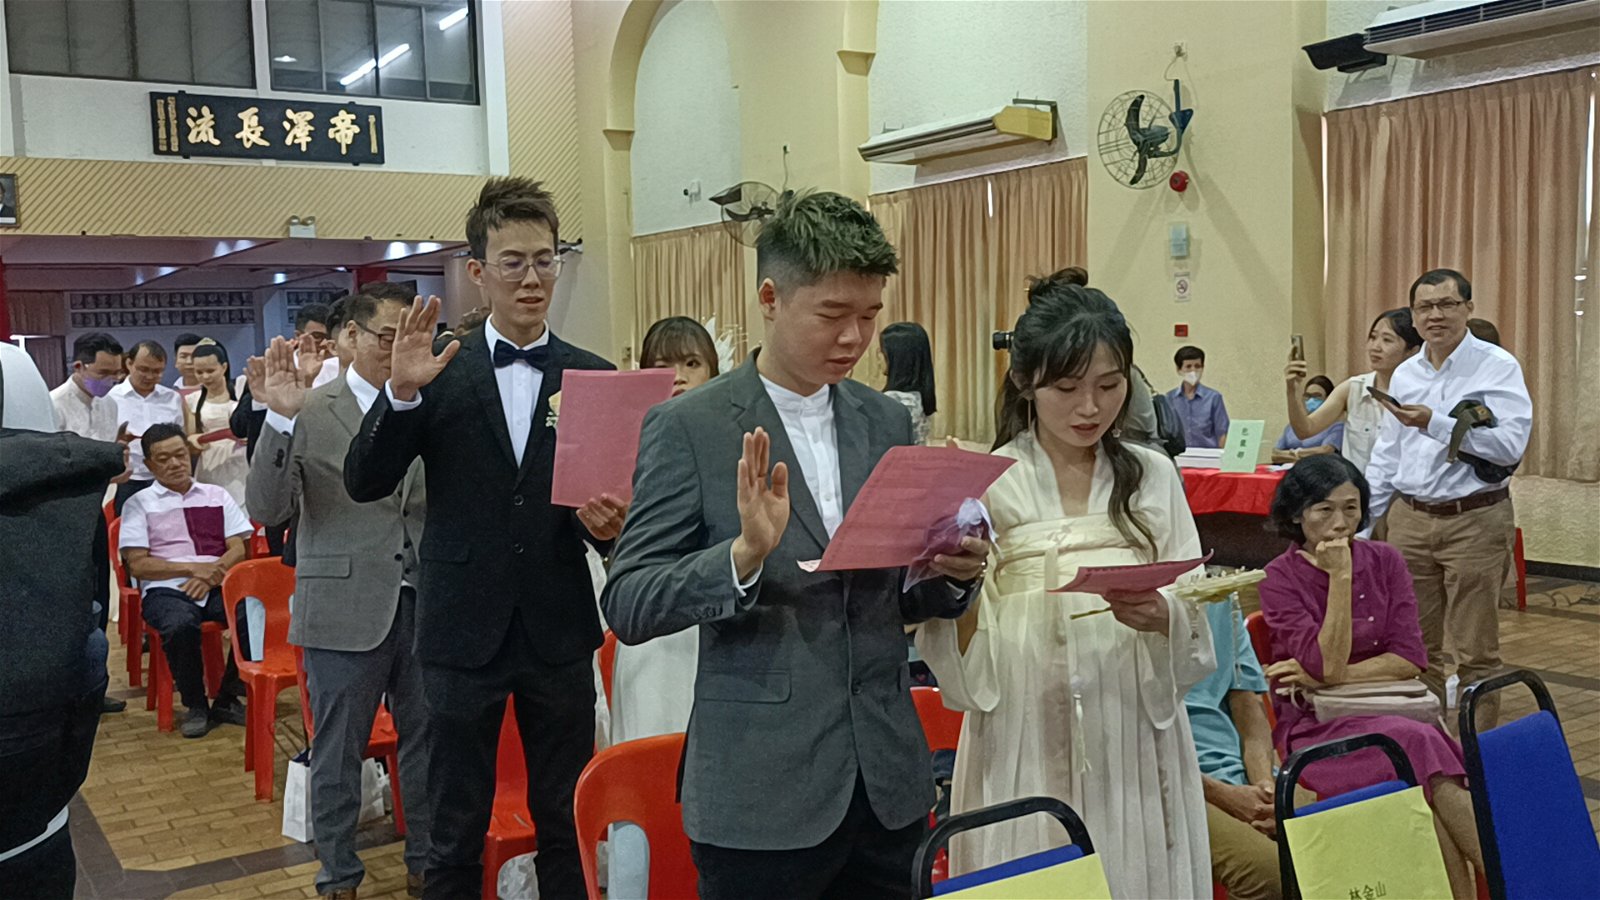 新人集体宣读婚姻注册誓言。